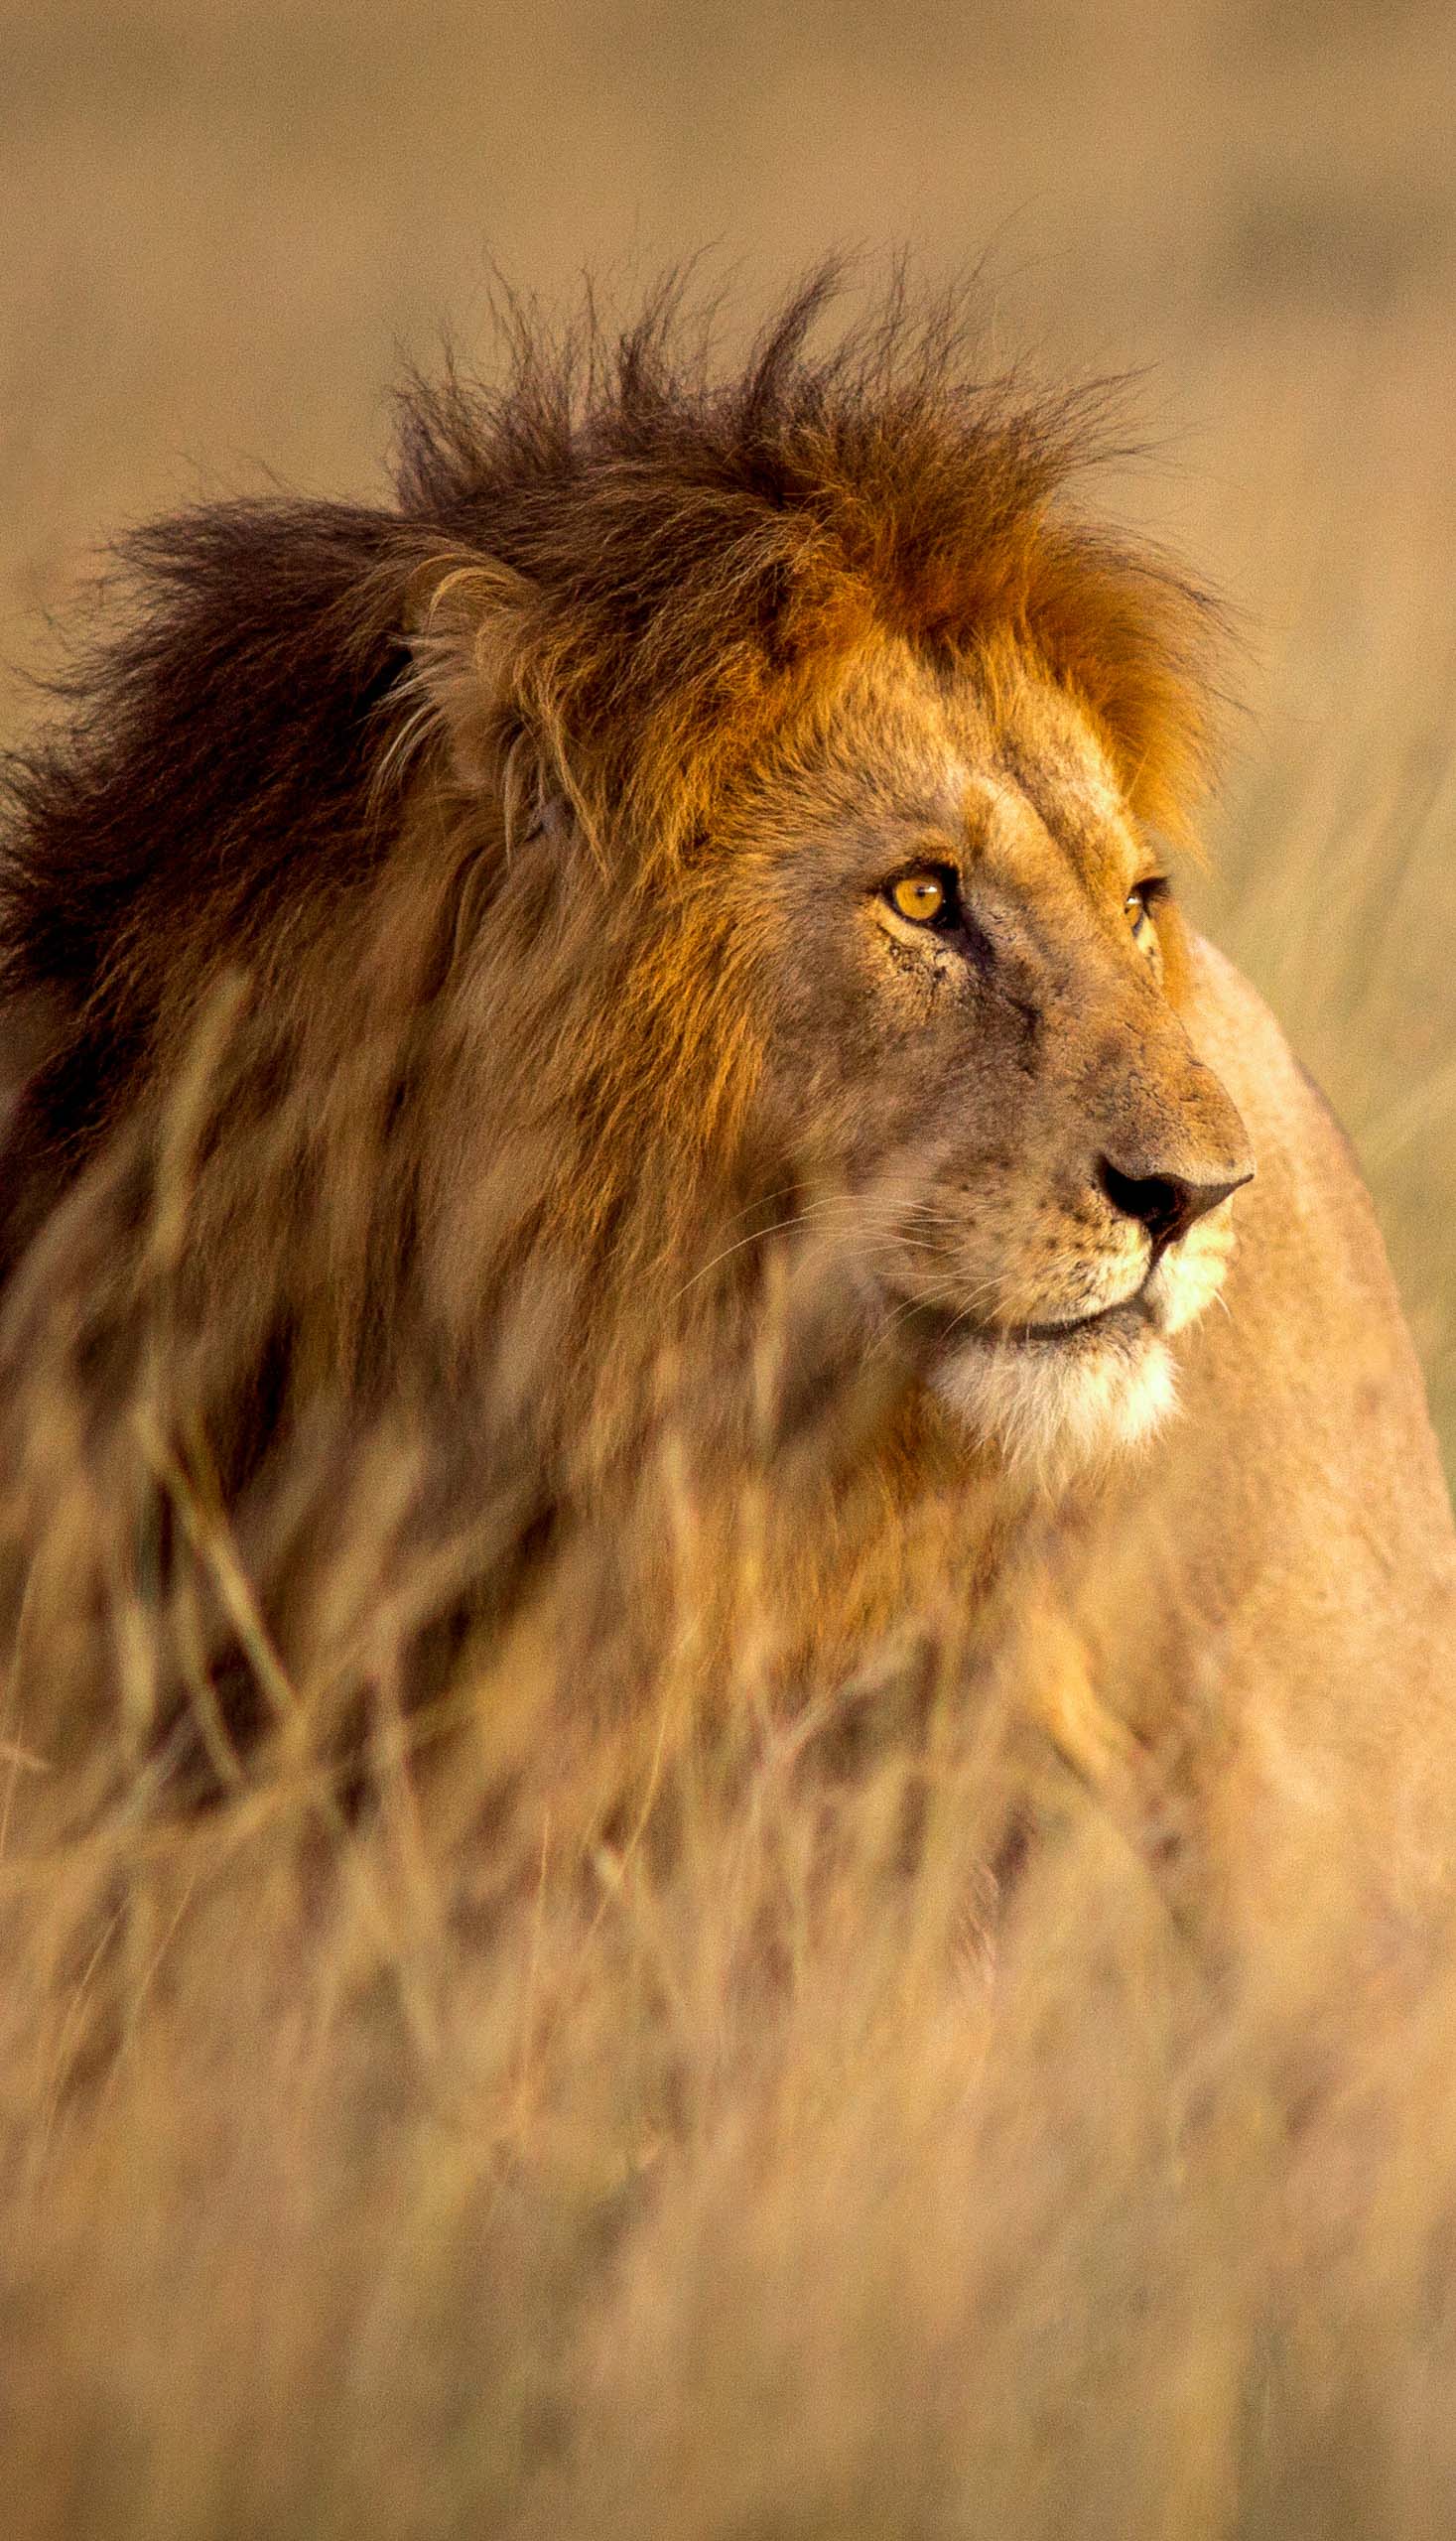 A male lion.